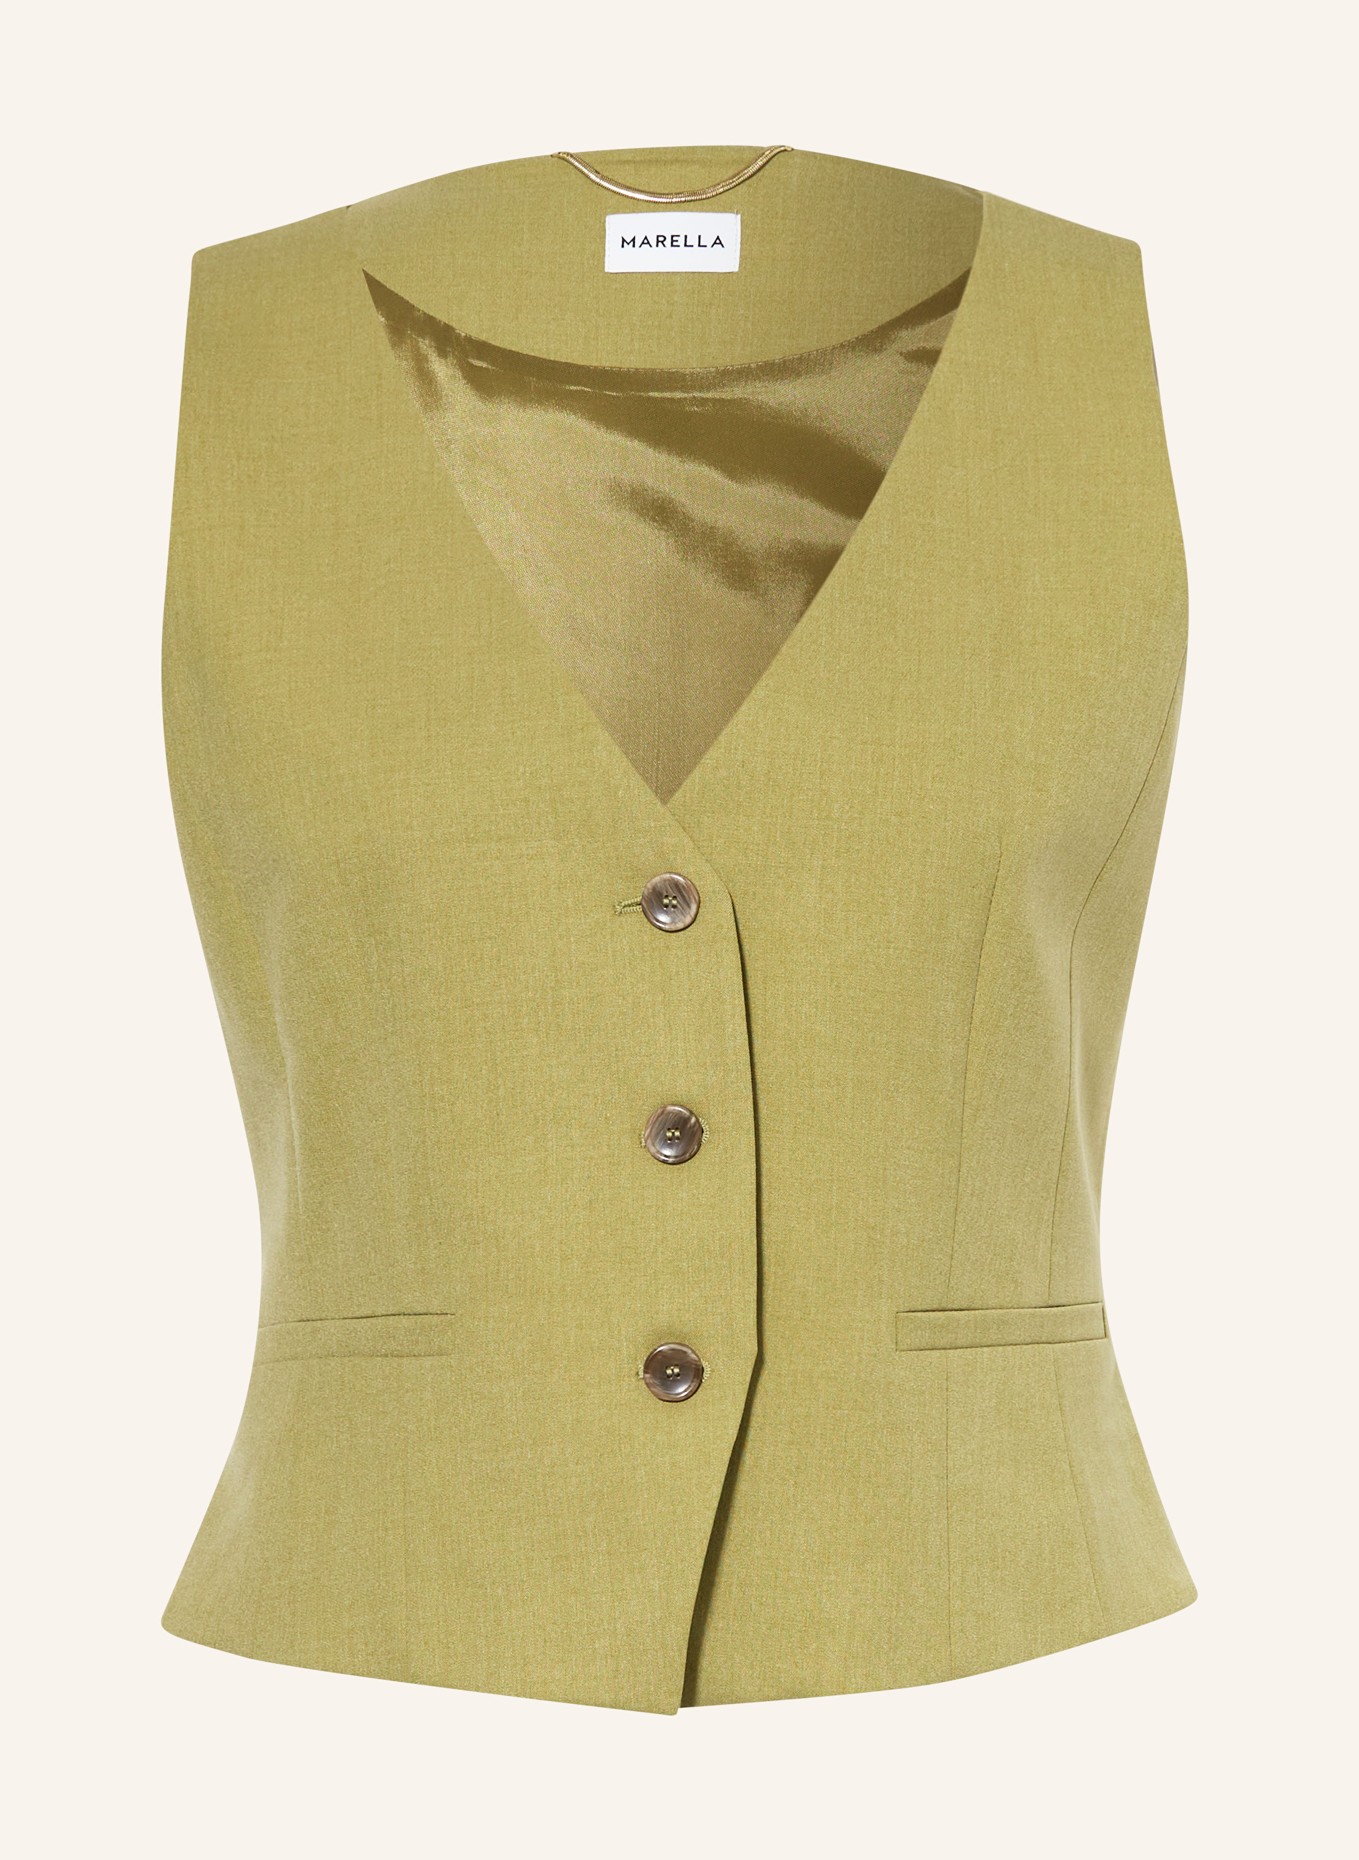 MARELLA Vest, Color: OLIVE (Image 1)